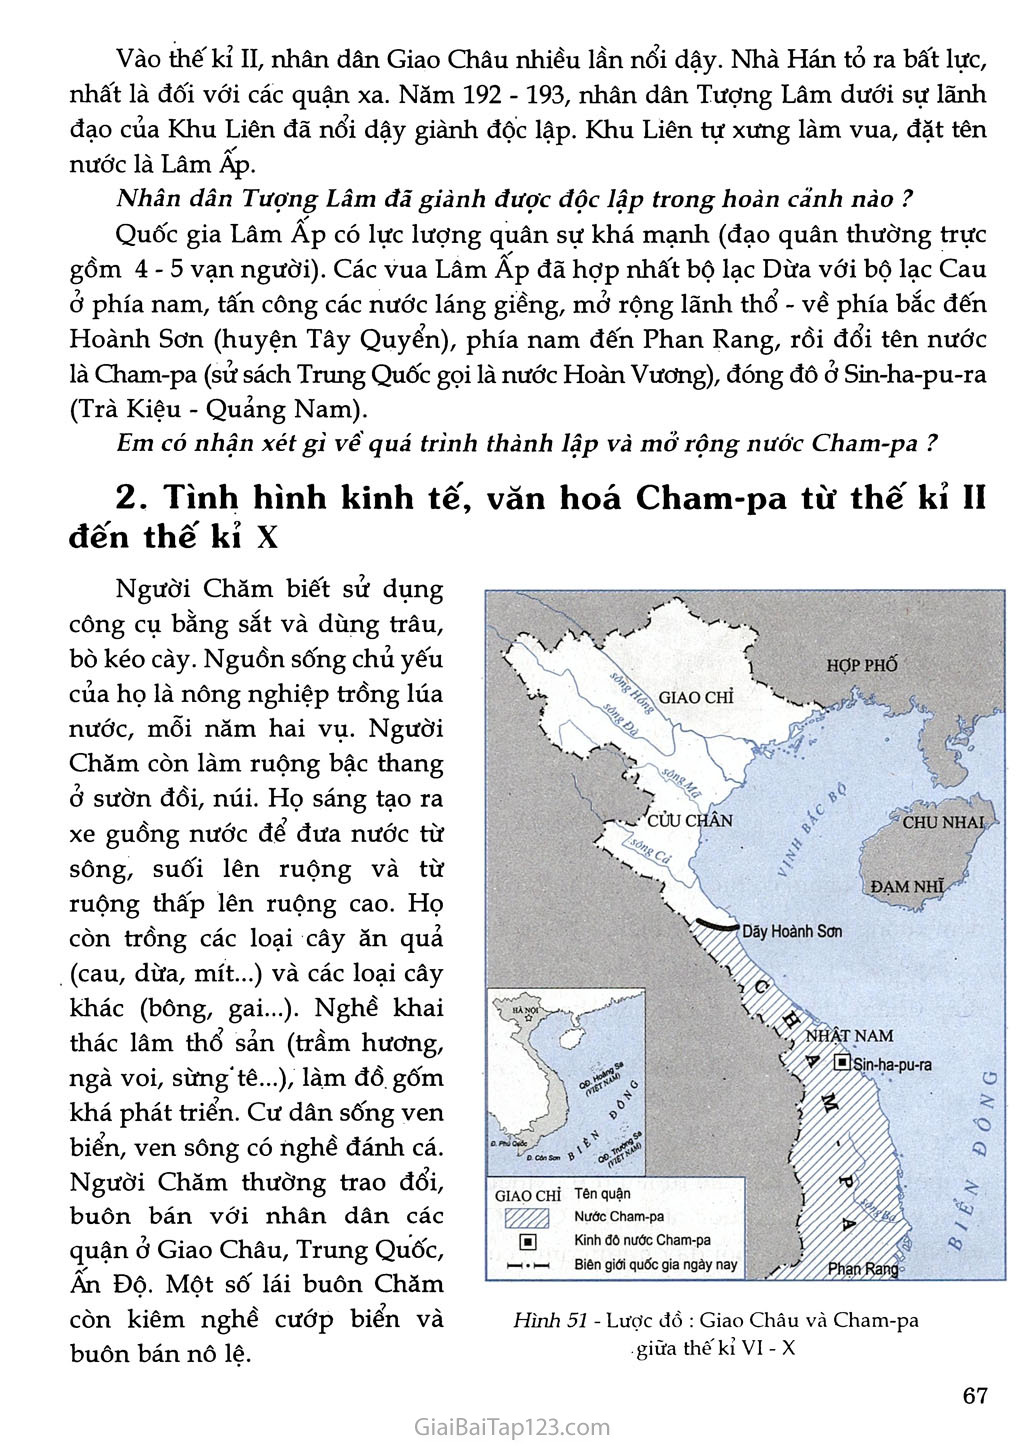 Bài 24 - Nước Cham - pa từ thế kỉ II đến thế kỉ X (1 tiết) trang 2